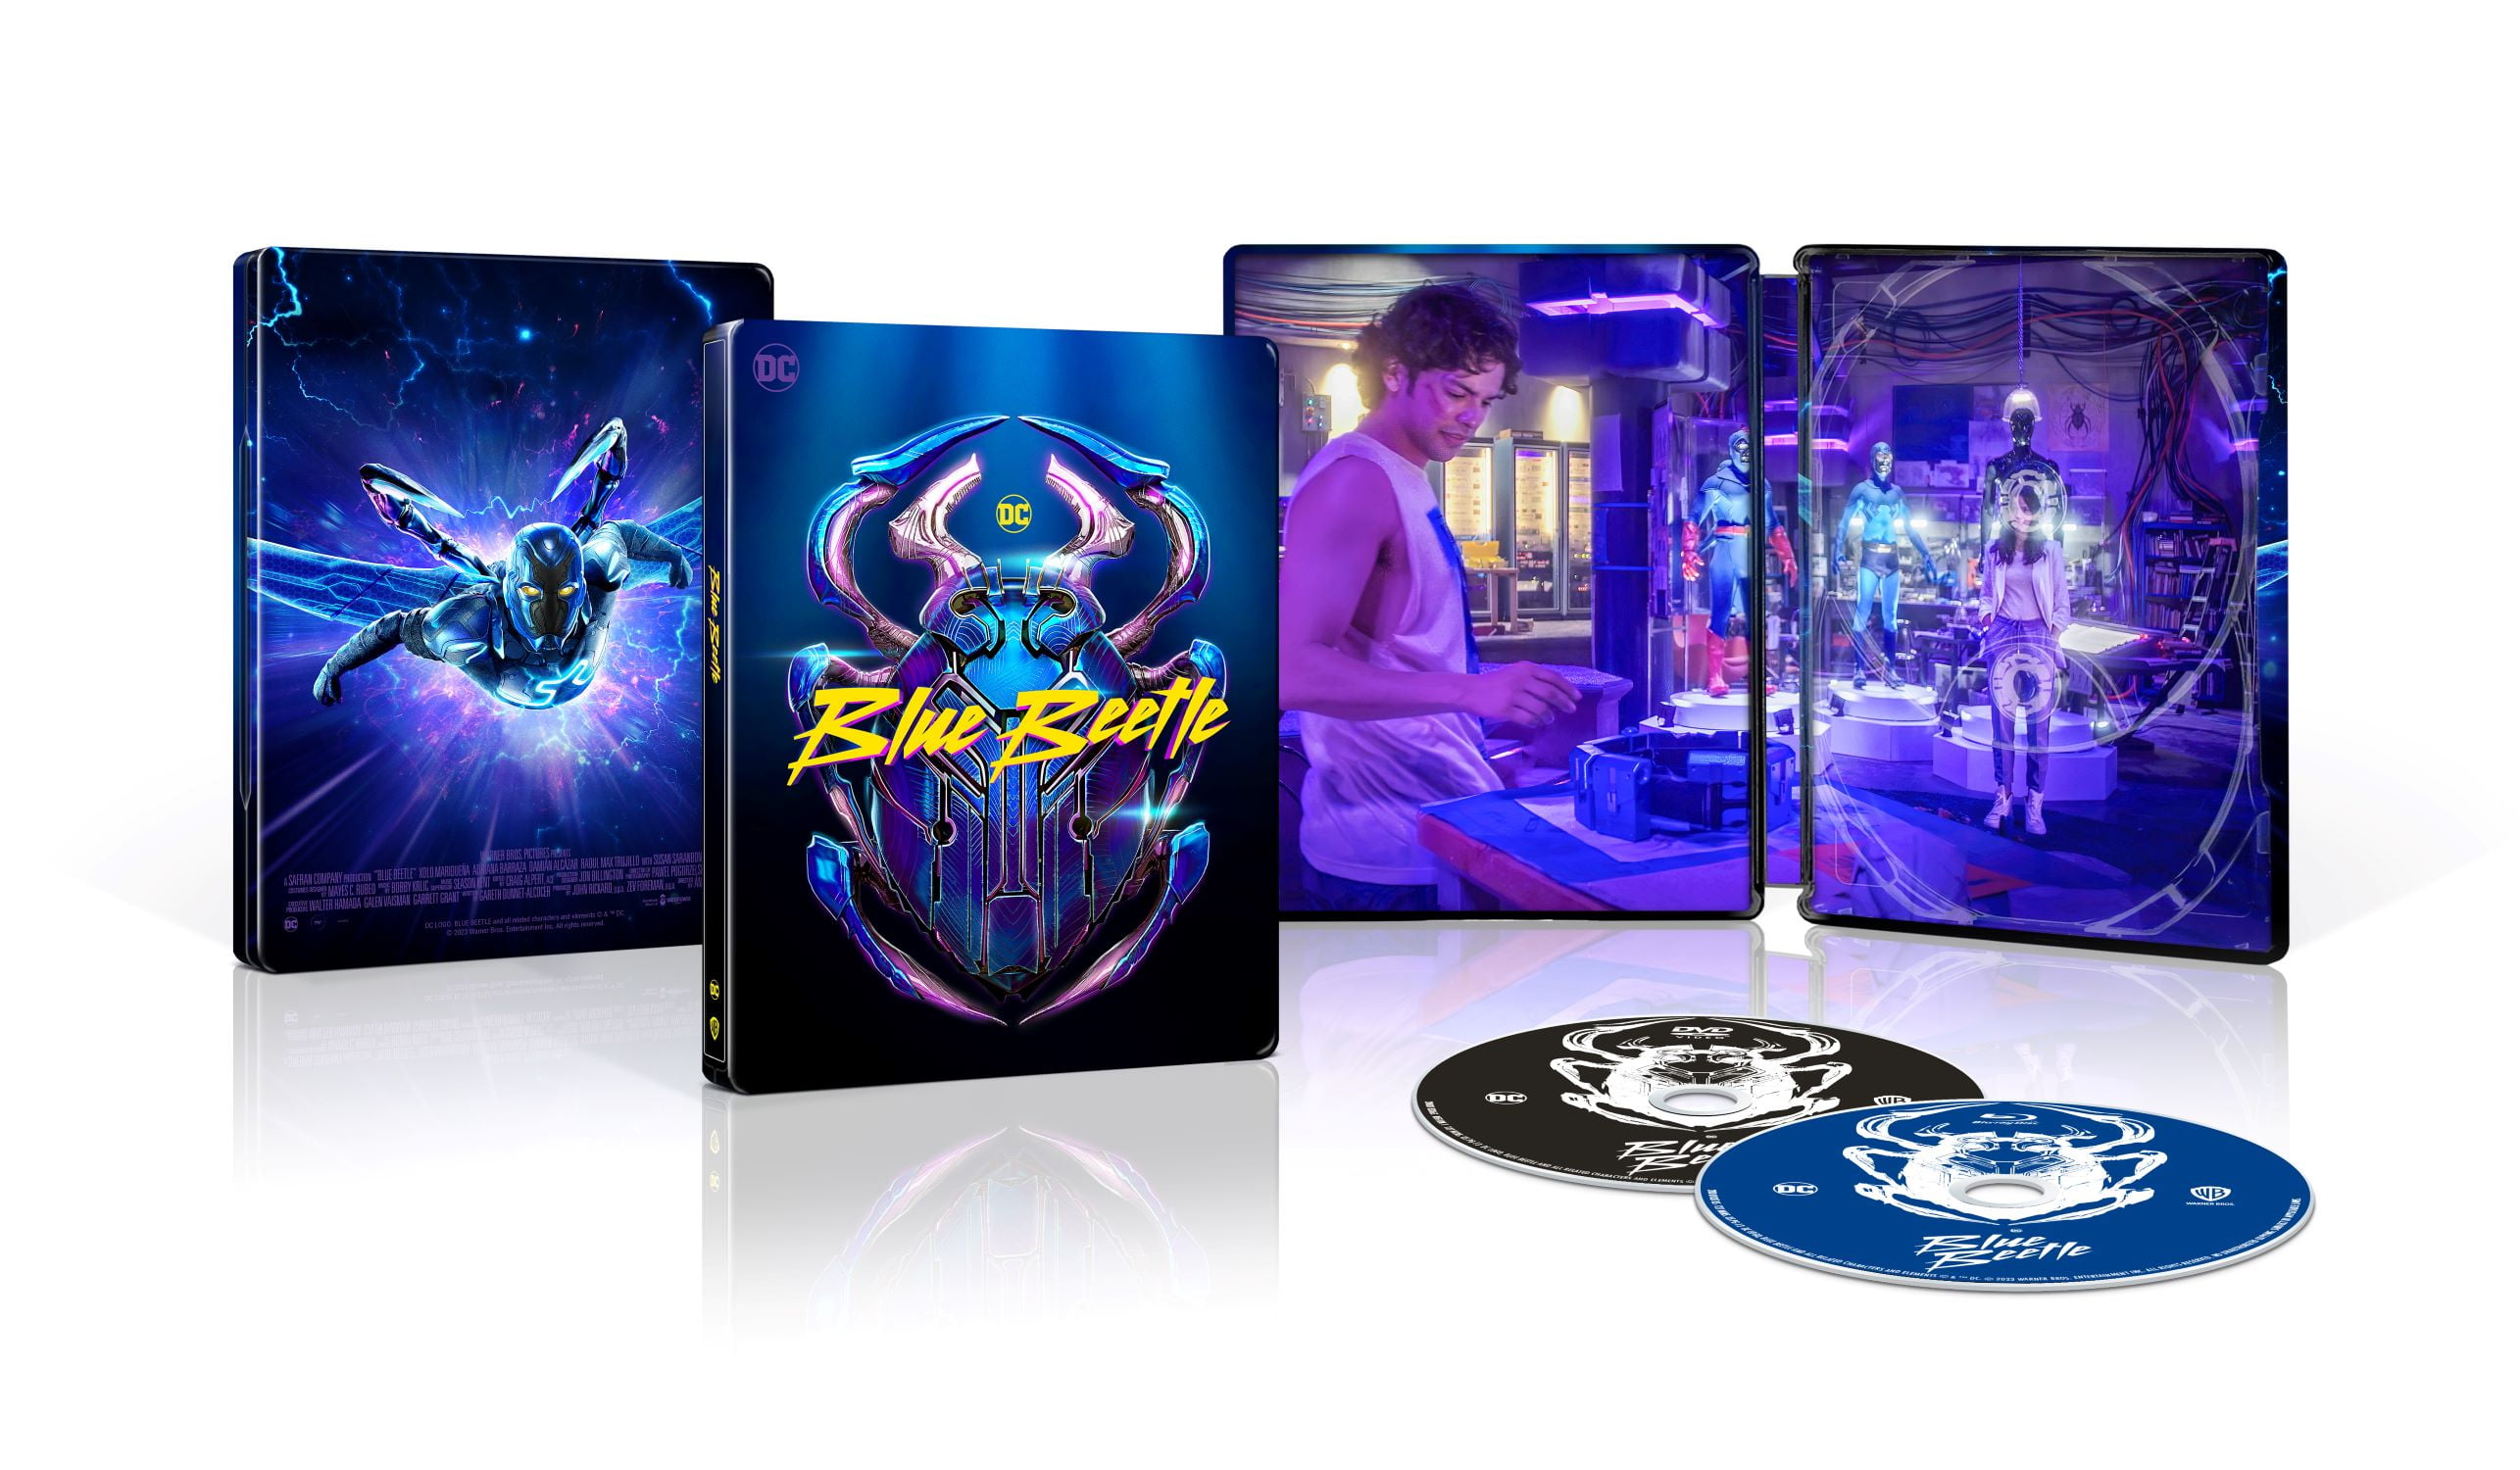 Blue Beetle (Walmart Exclusive) (Steelbook Blu-ray + DVD + Digital Copy) 